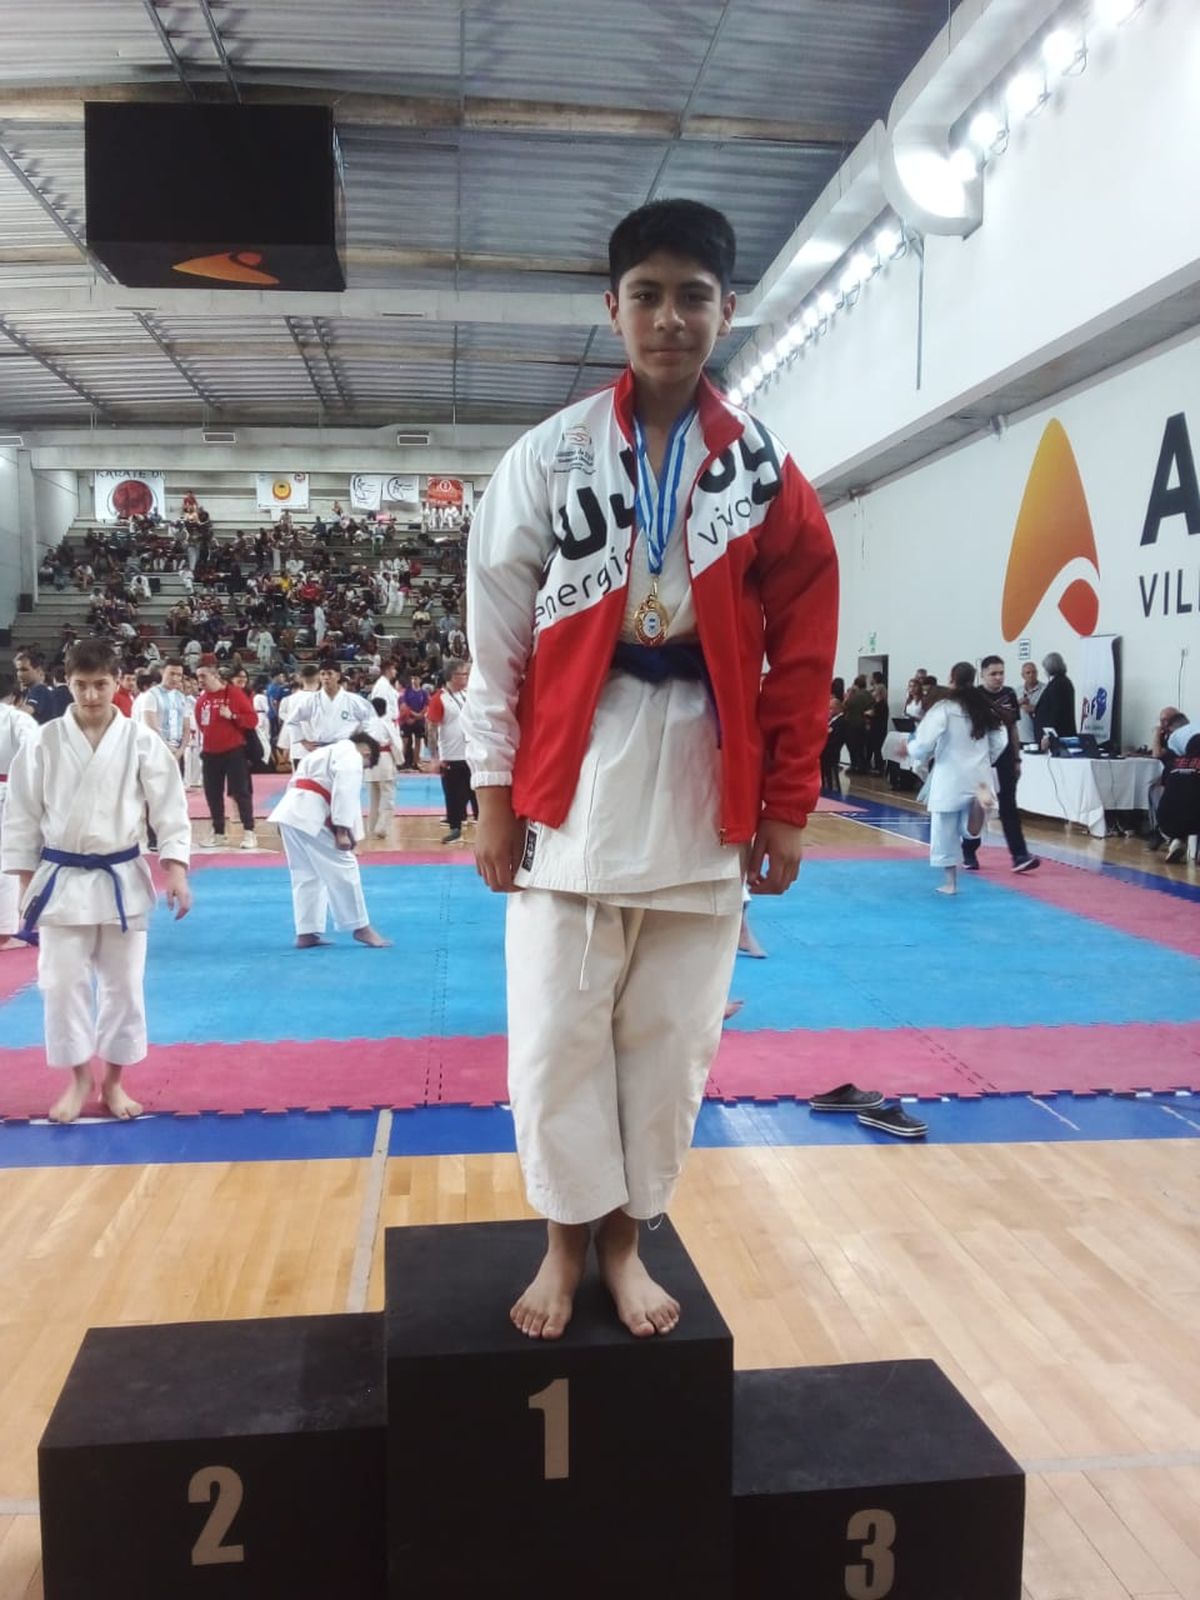 Jujeños hicieron podio en torneo argentino de karate